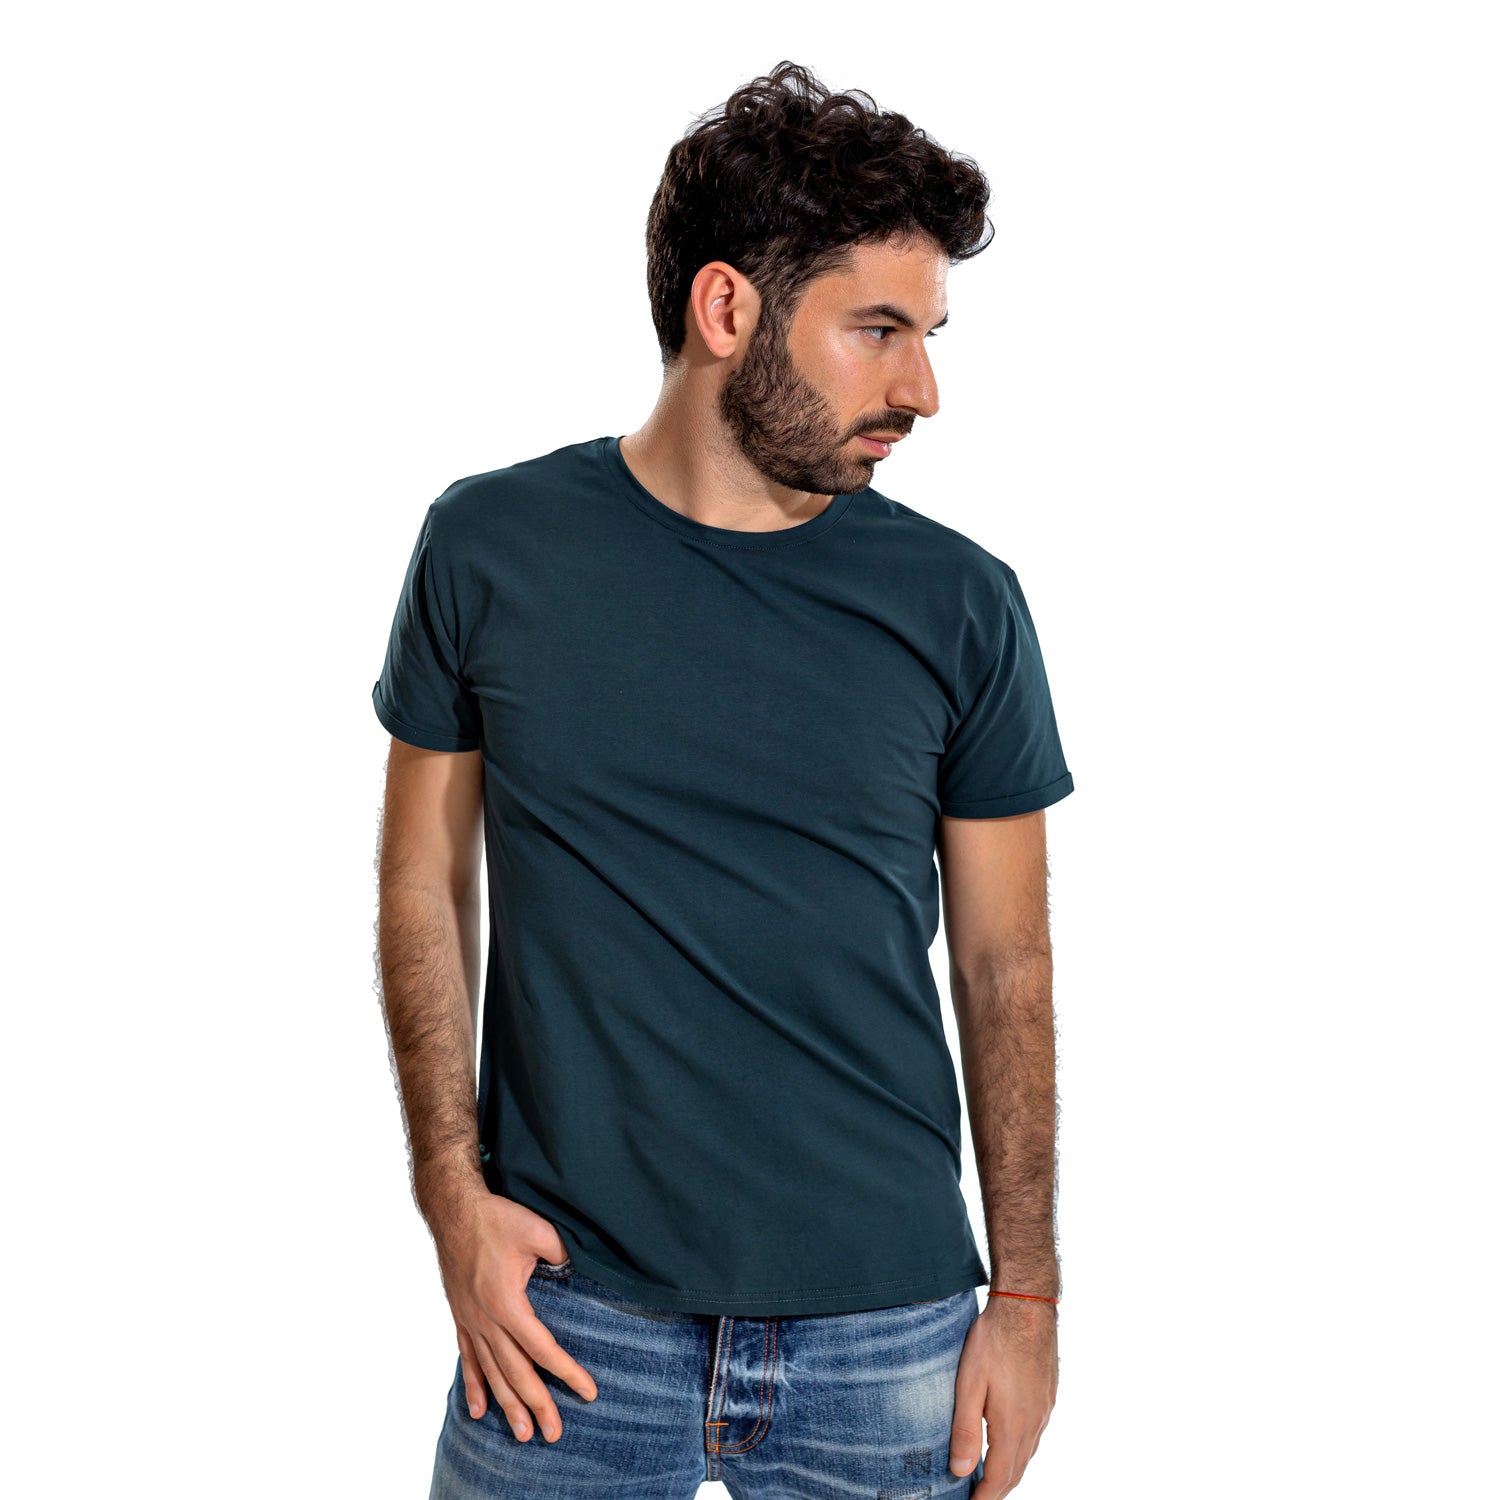 Blue Aegean, T-shirt, shirt, man, plane tee, soft cotton, sleek, front view,